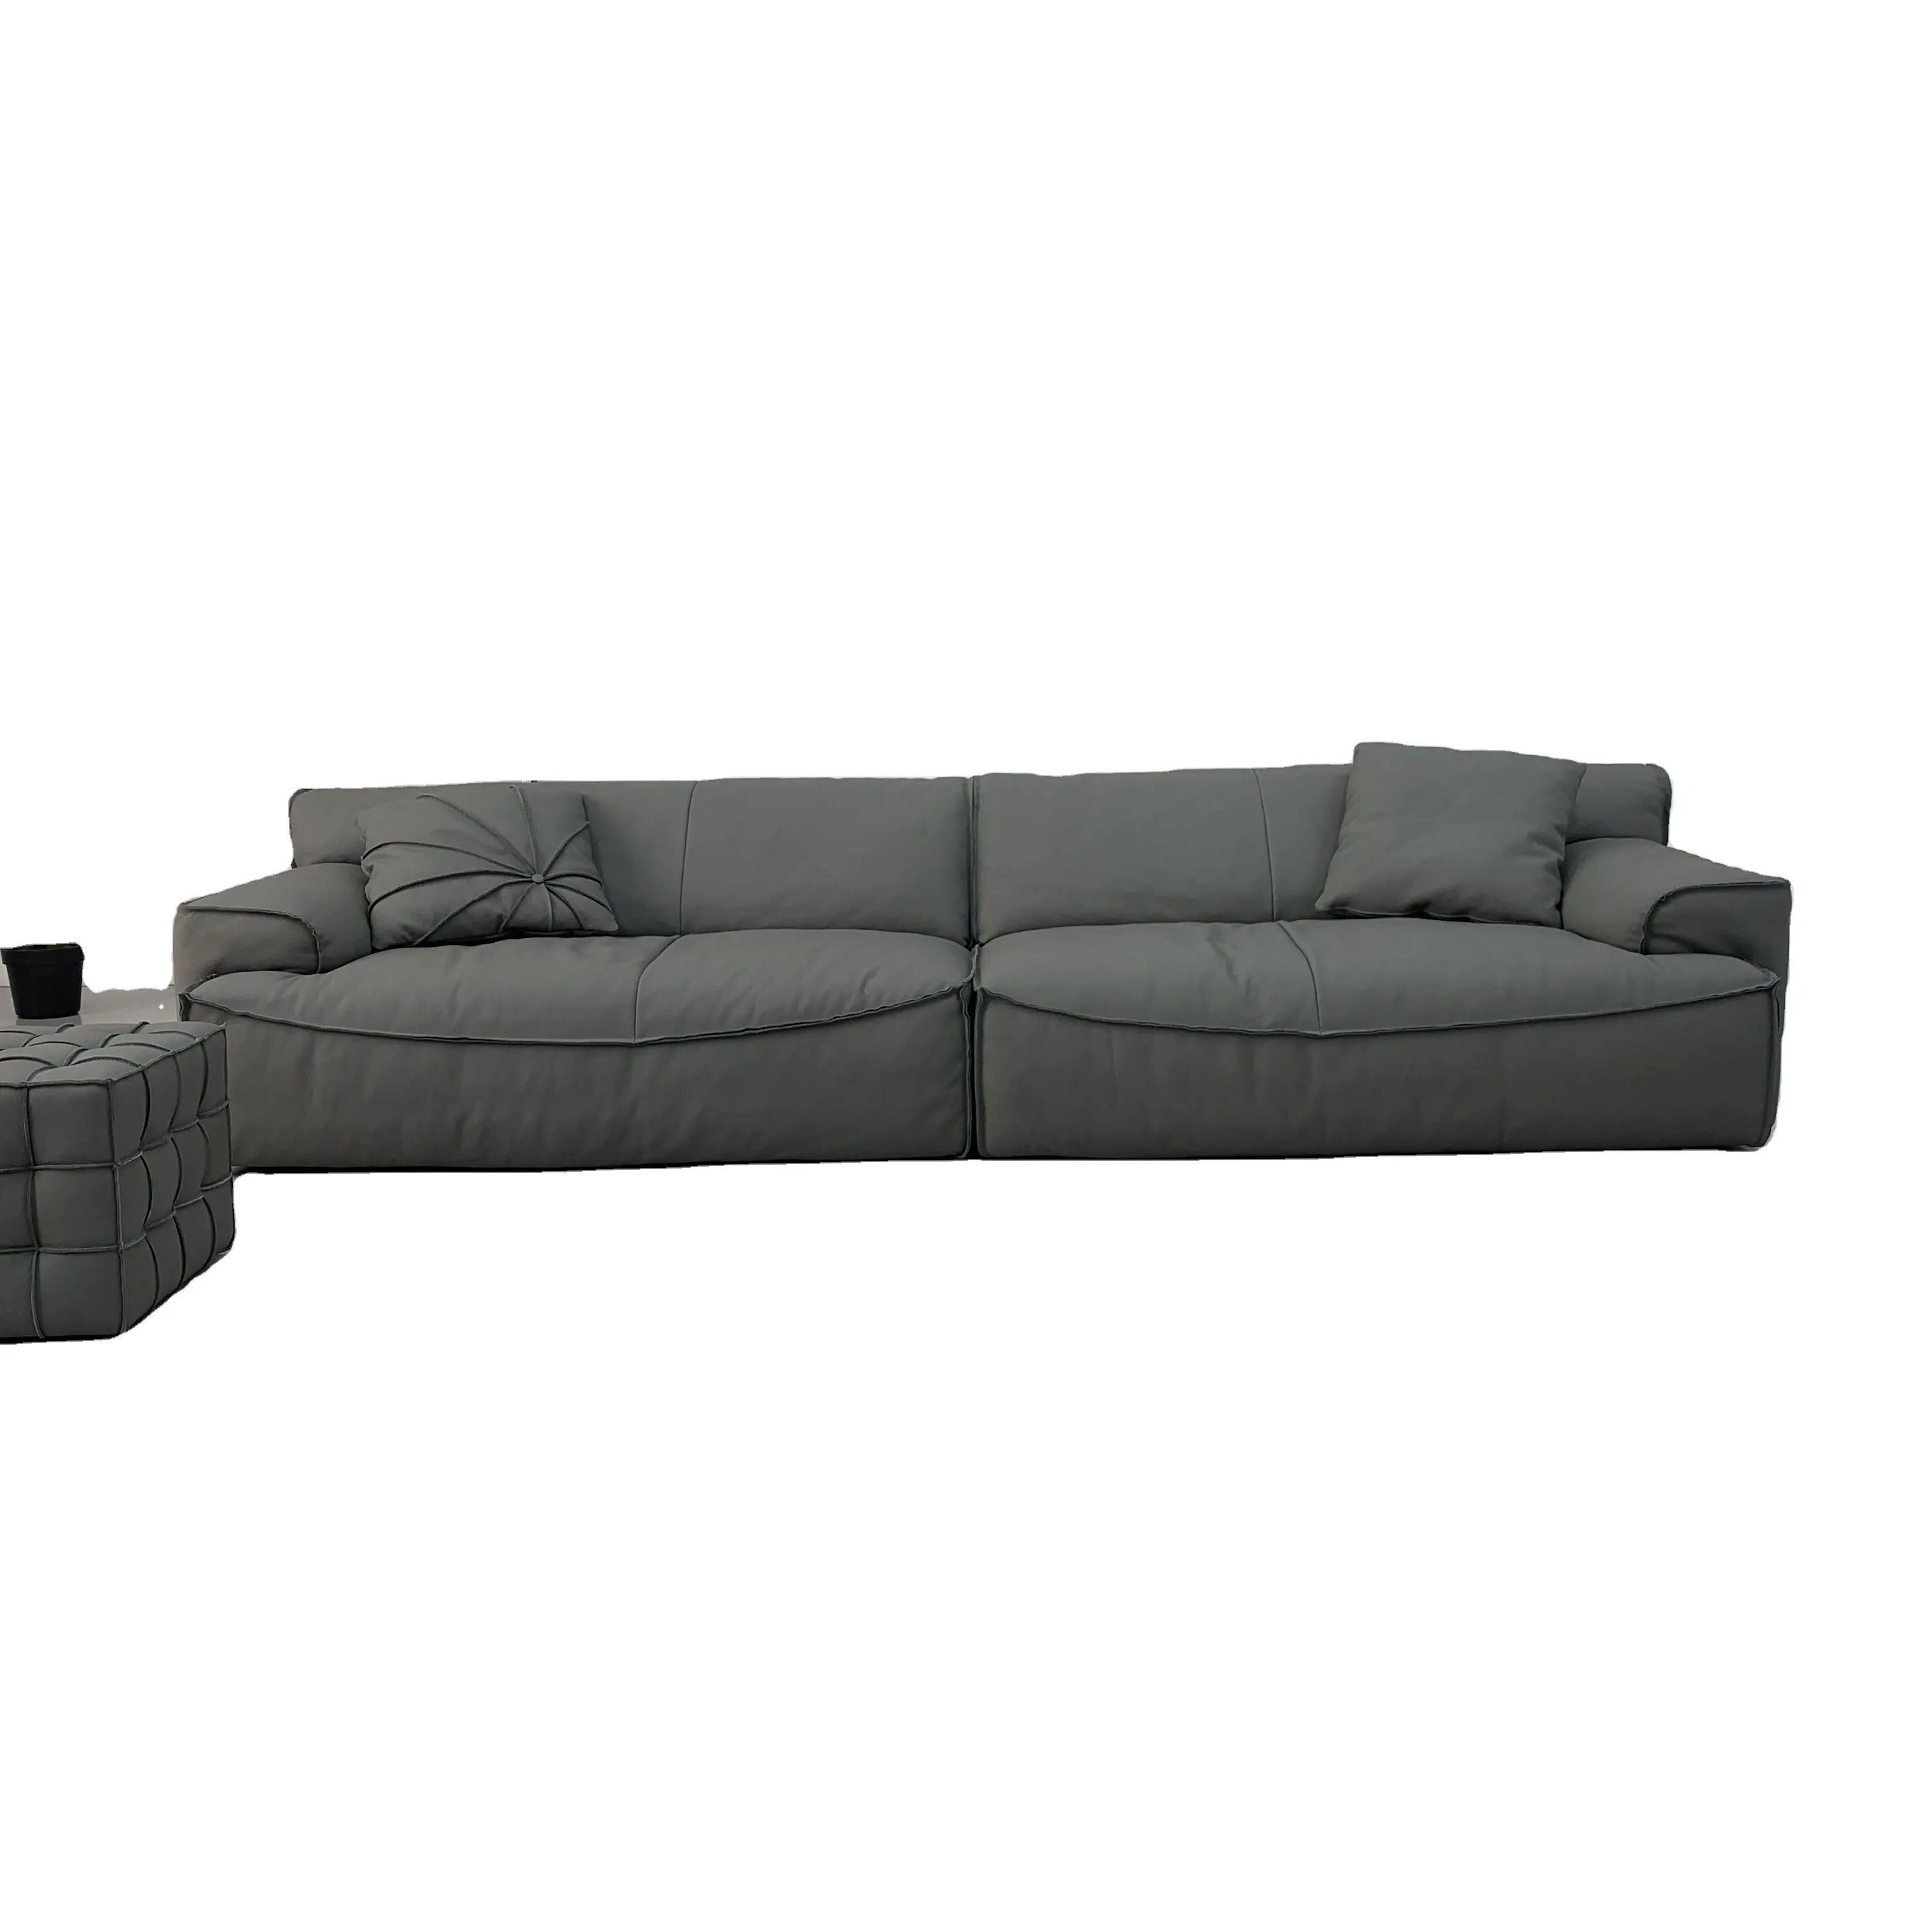 Samt Sofa Couch für Wohnzimmer & Apartment Easy-Assembly 2-Sitz 3-Sitz 4-Sitz mit arabischen Majlis Sofa